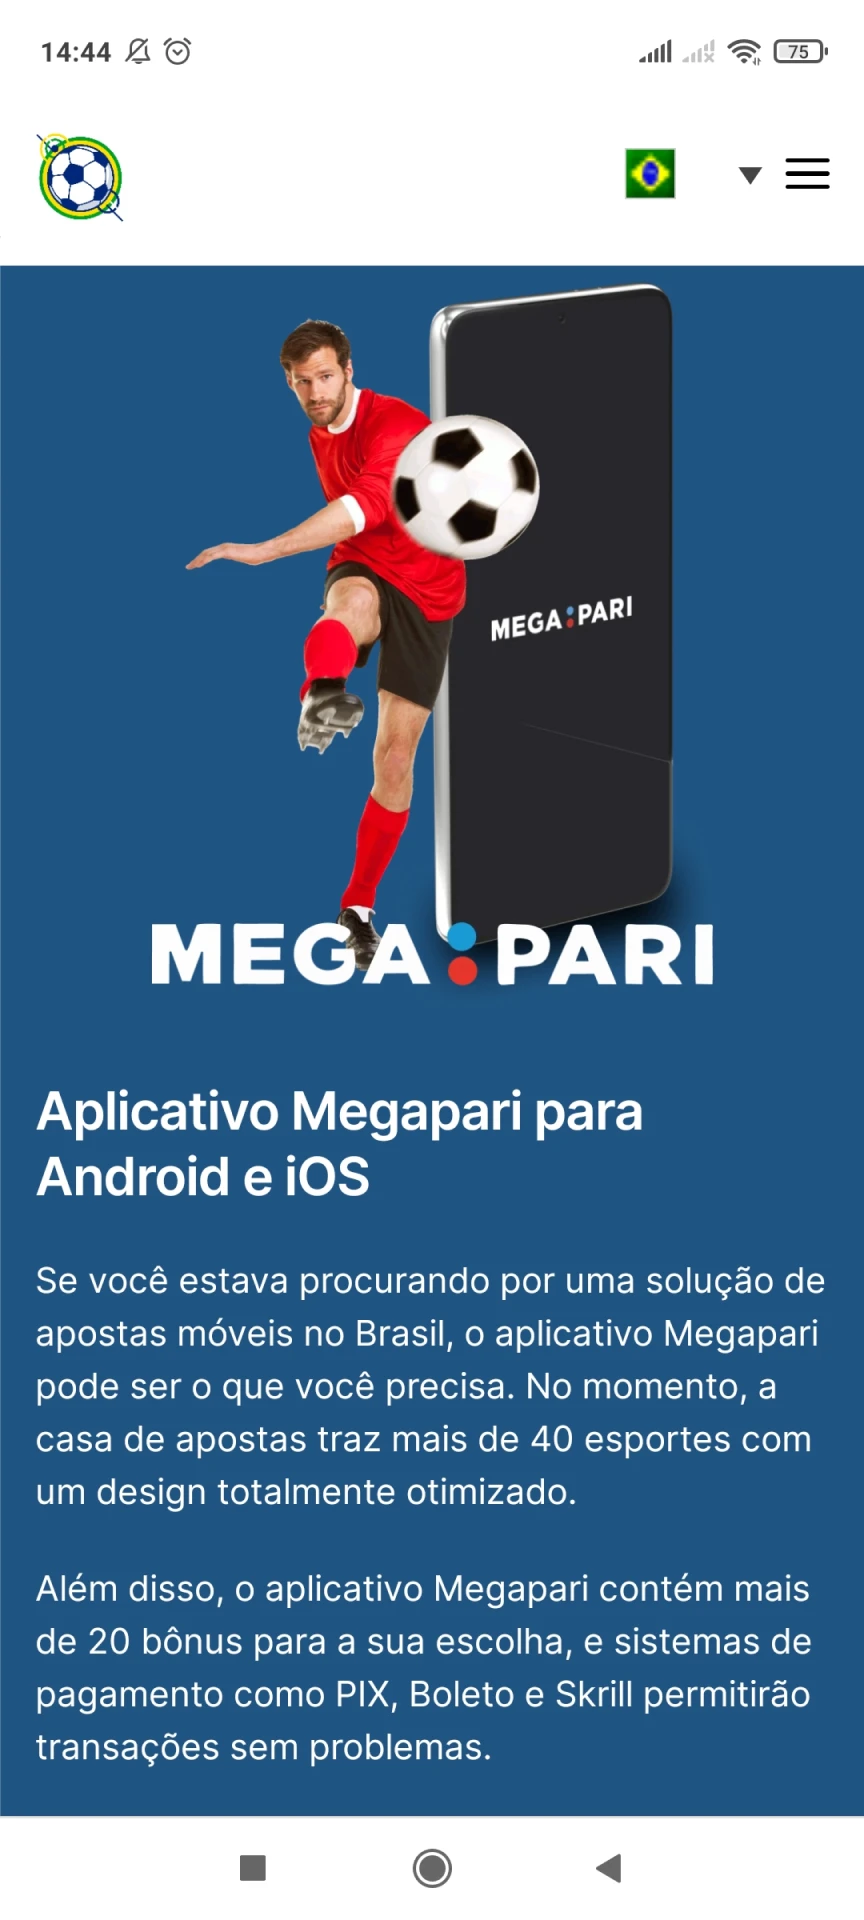 Visite a página inicial do Megapari para baixar aplicativos Android.